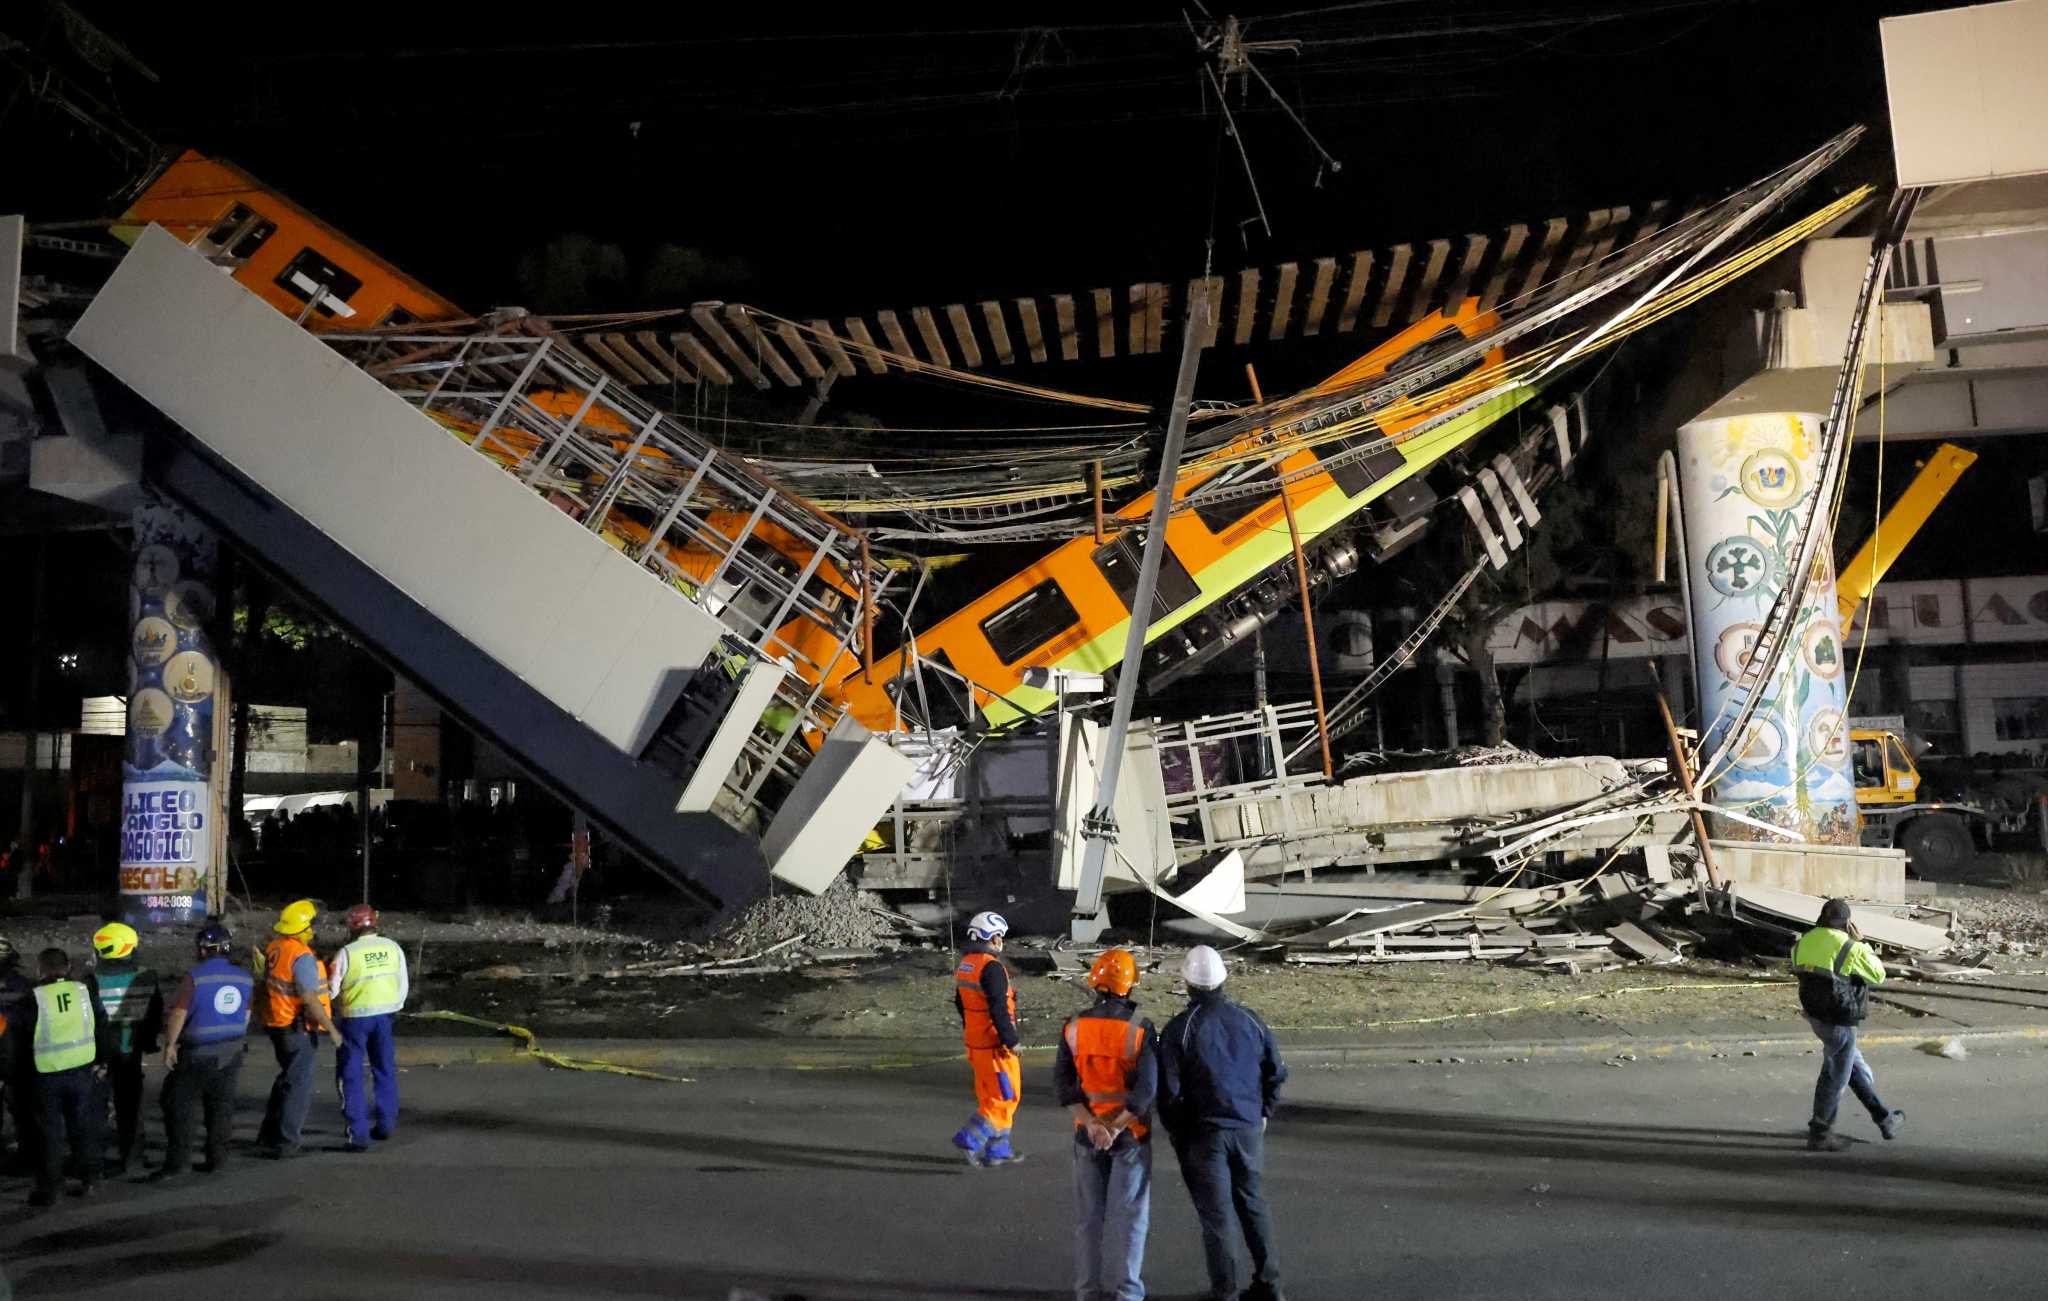 Μεξικό: Ασύλληπτη τραγωδία με νεκρούς στο μετρό – Συγκλονιστικές εικόνες